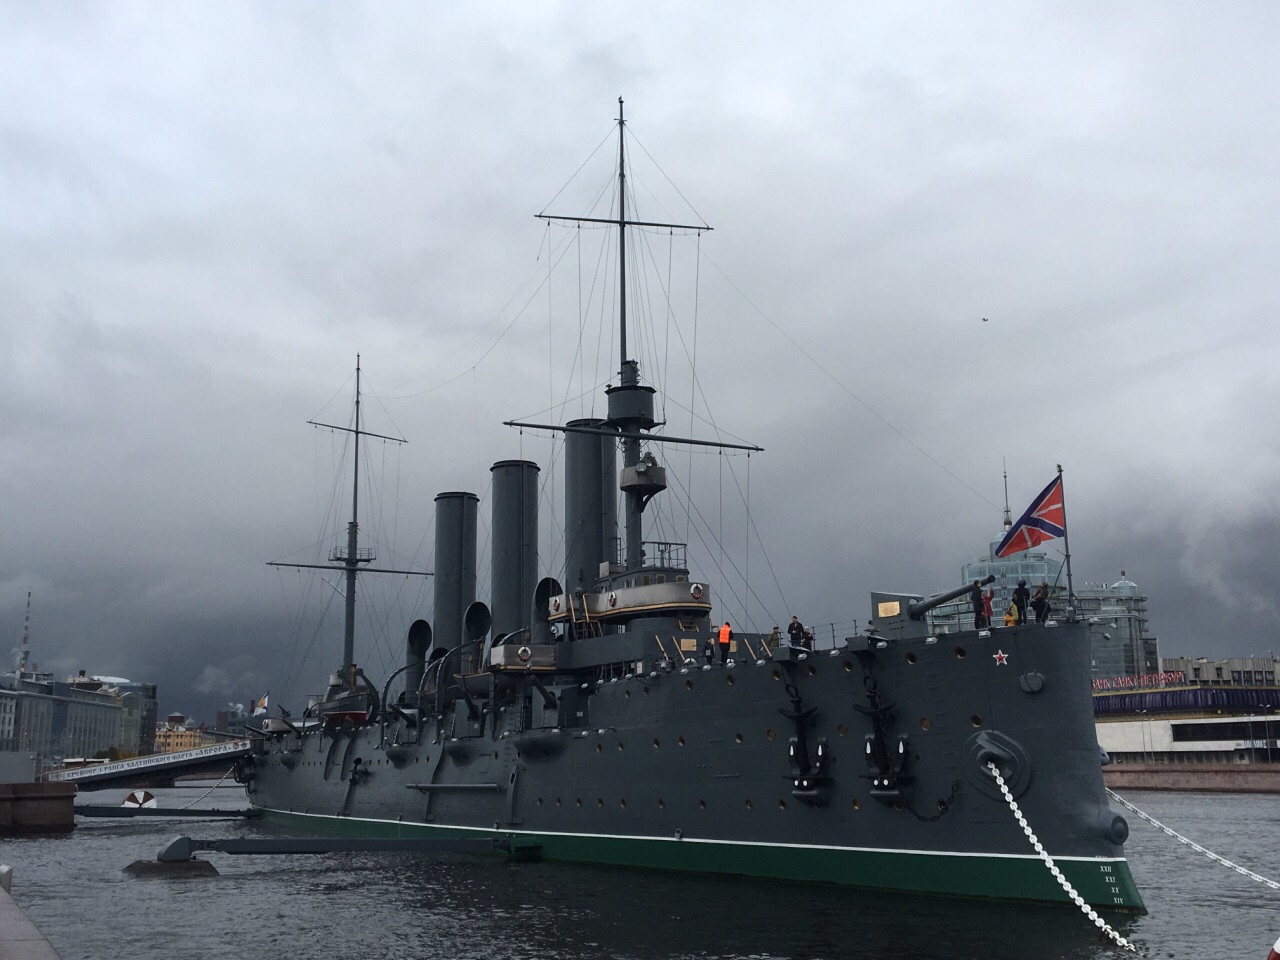 阿芙乐尔号巡洋舰炮轰临时政府所在地冬宫,宣告了十月革命的开始